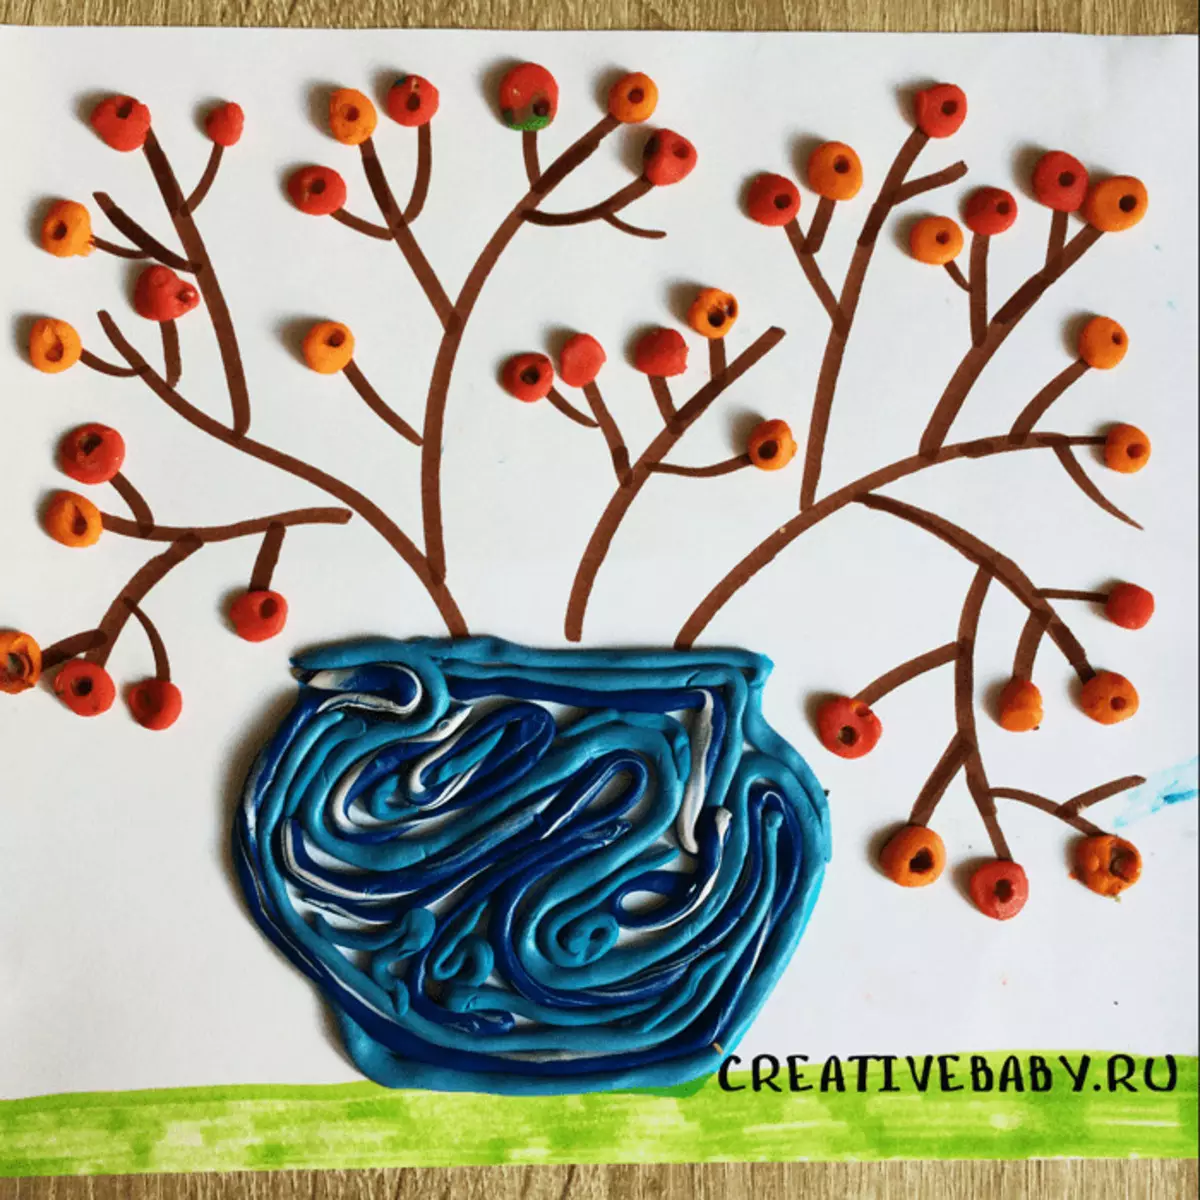 Rowan از Plasticine (31 عکس): شاخه های بهبود یافته بر روی کارتن. چگونه یک دسته بزرگ را با دستان خود بسازید؟ چگونه می توان قرمز را در گلدان برای کودکان بسازید؟ 26540_30